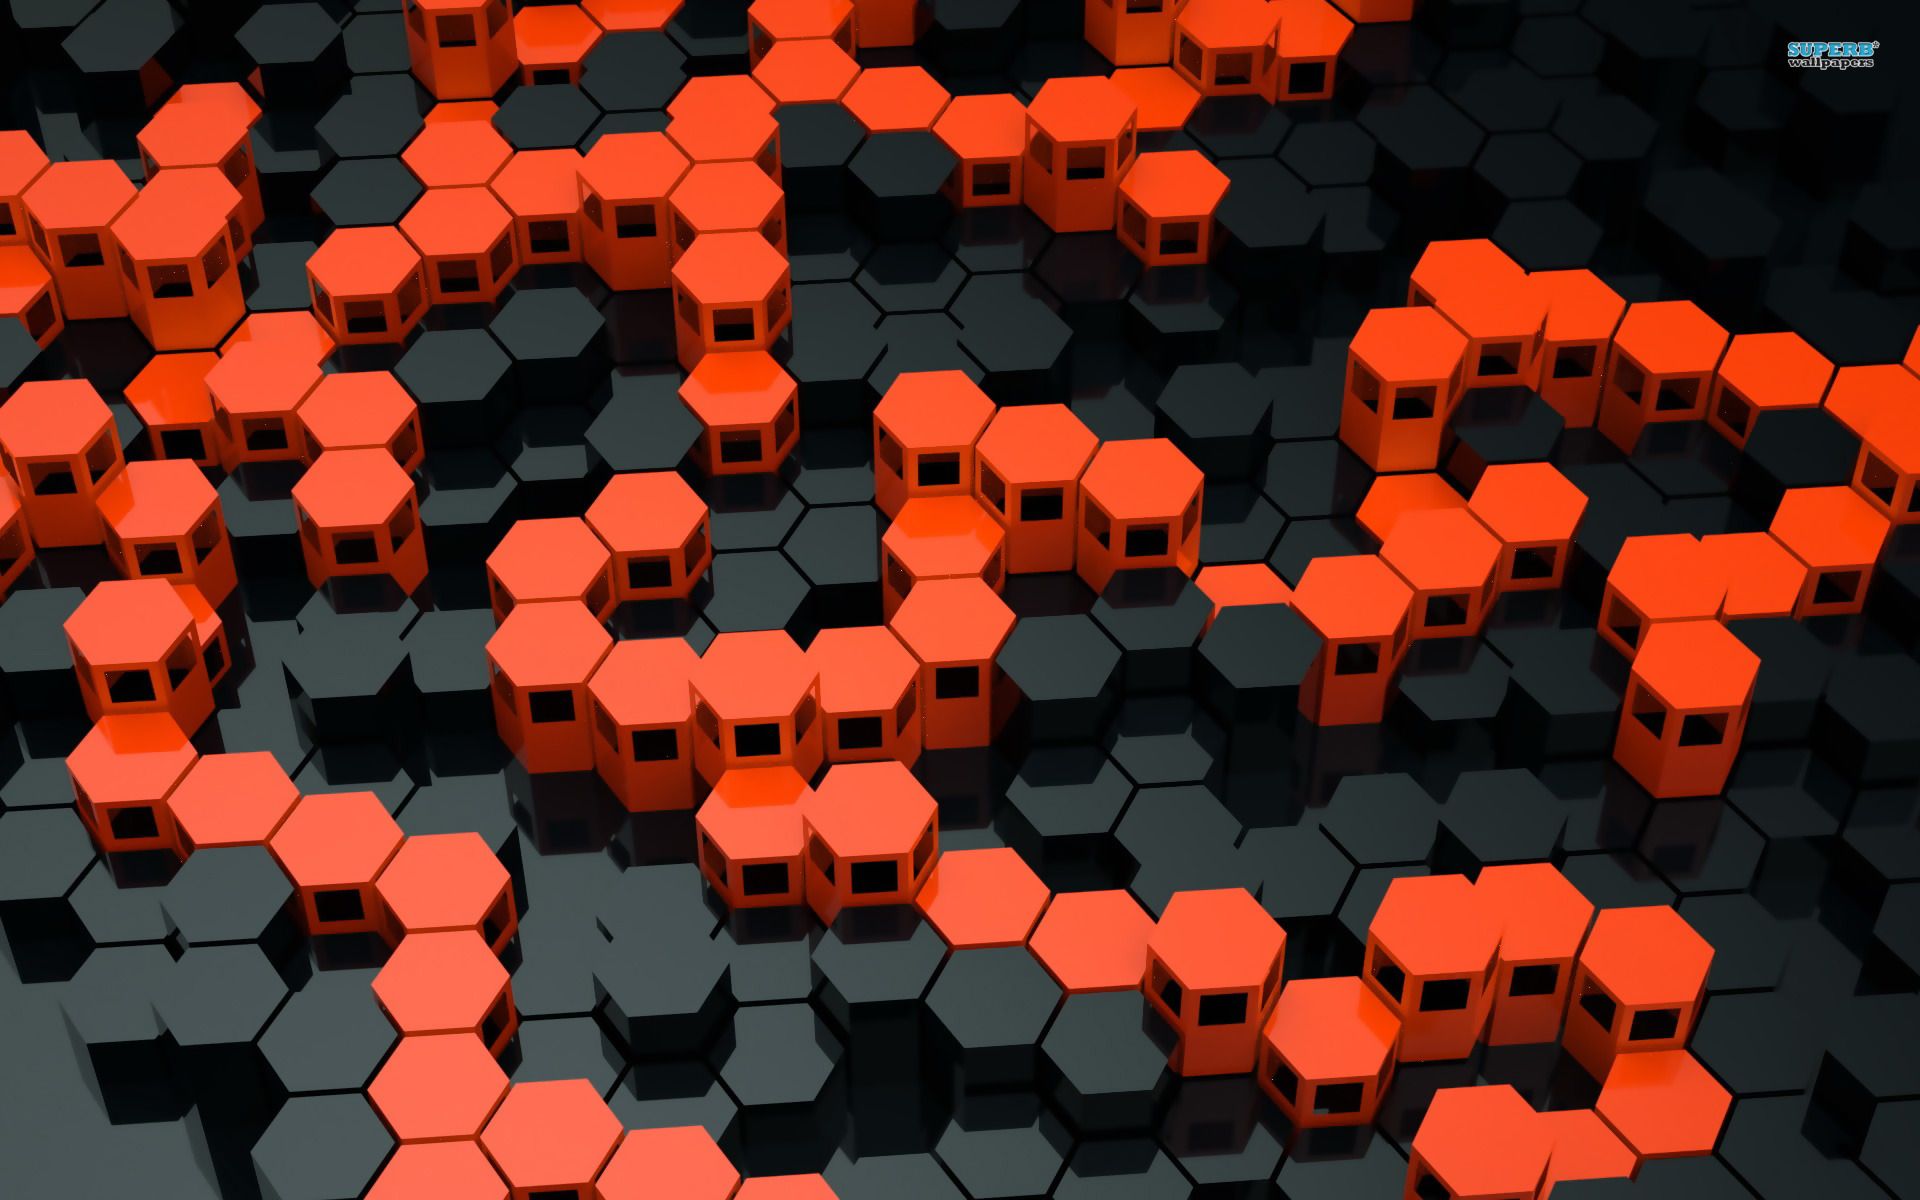 3D, Hexagons Wallpaper 1920x1200 1200x1920Px Hexagon Wallpaper